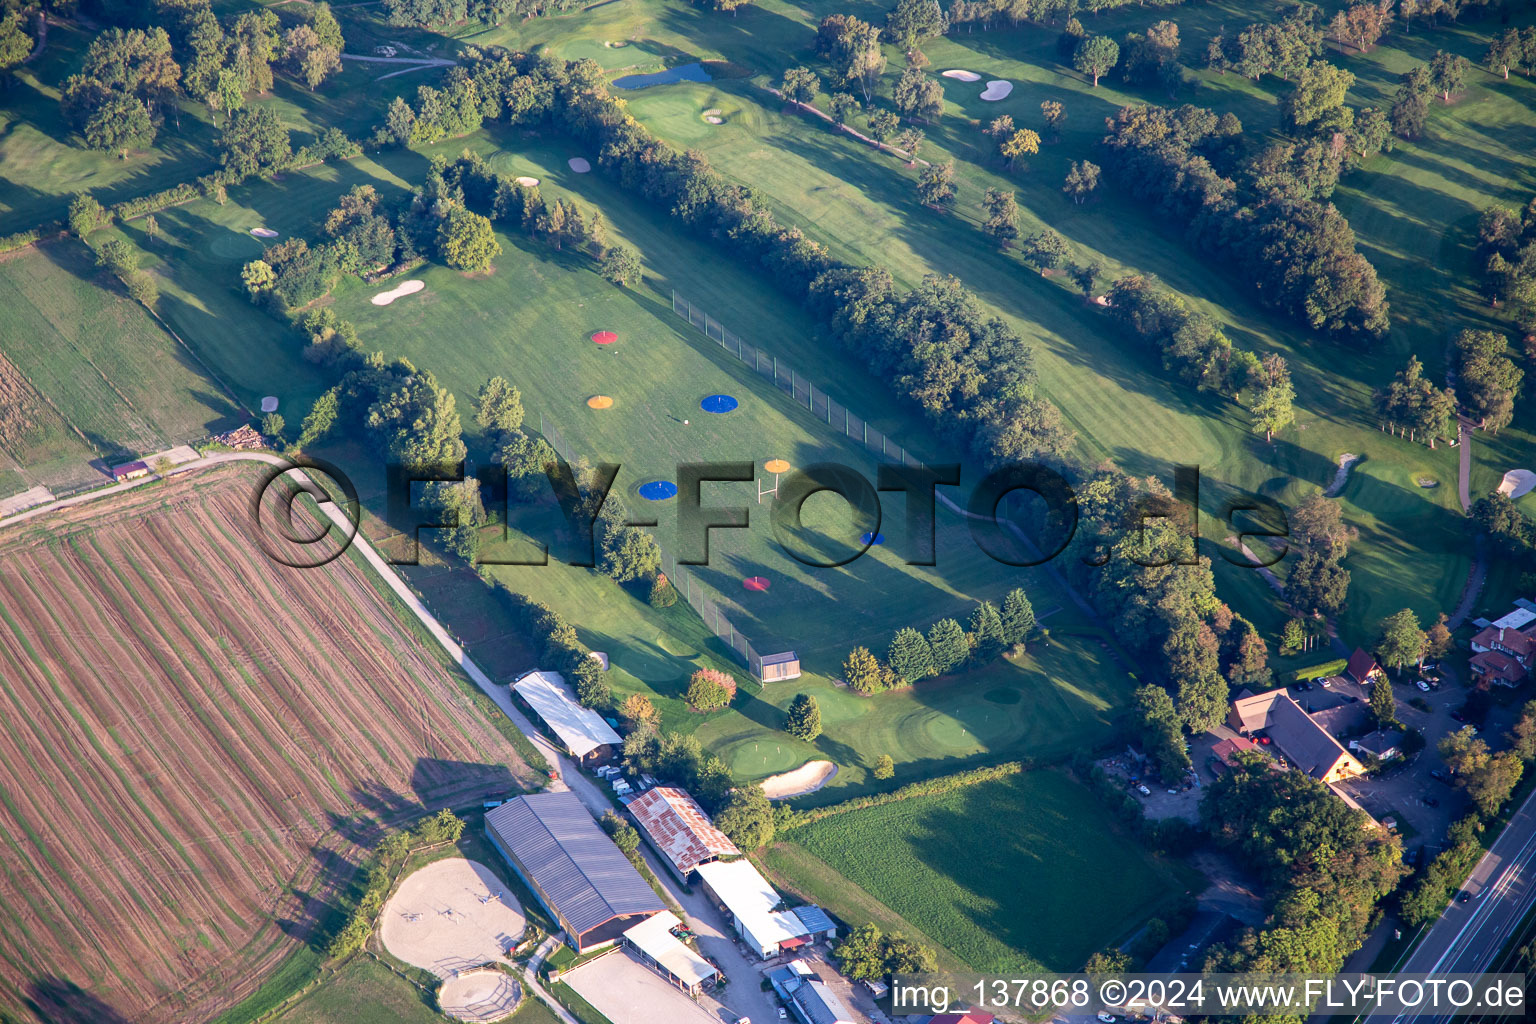 Luftbild von Golf Club Strasbourg in Illkirch-Graffenstaden im Bundesland Bas-Rhin, Frankreich